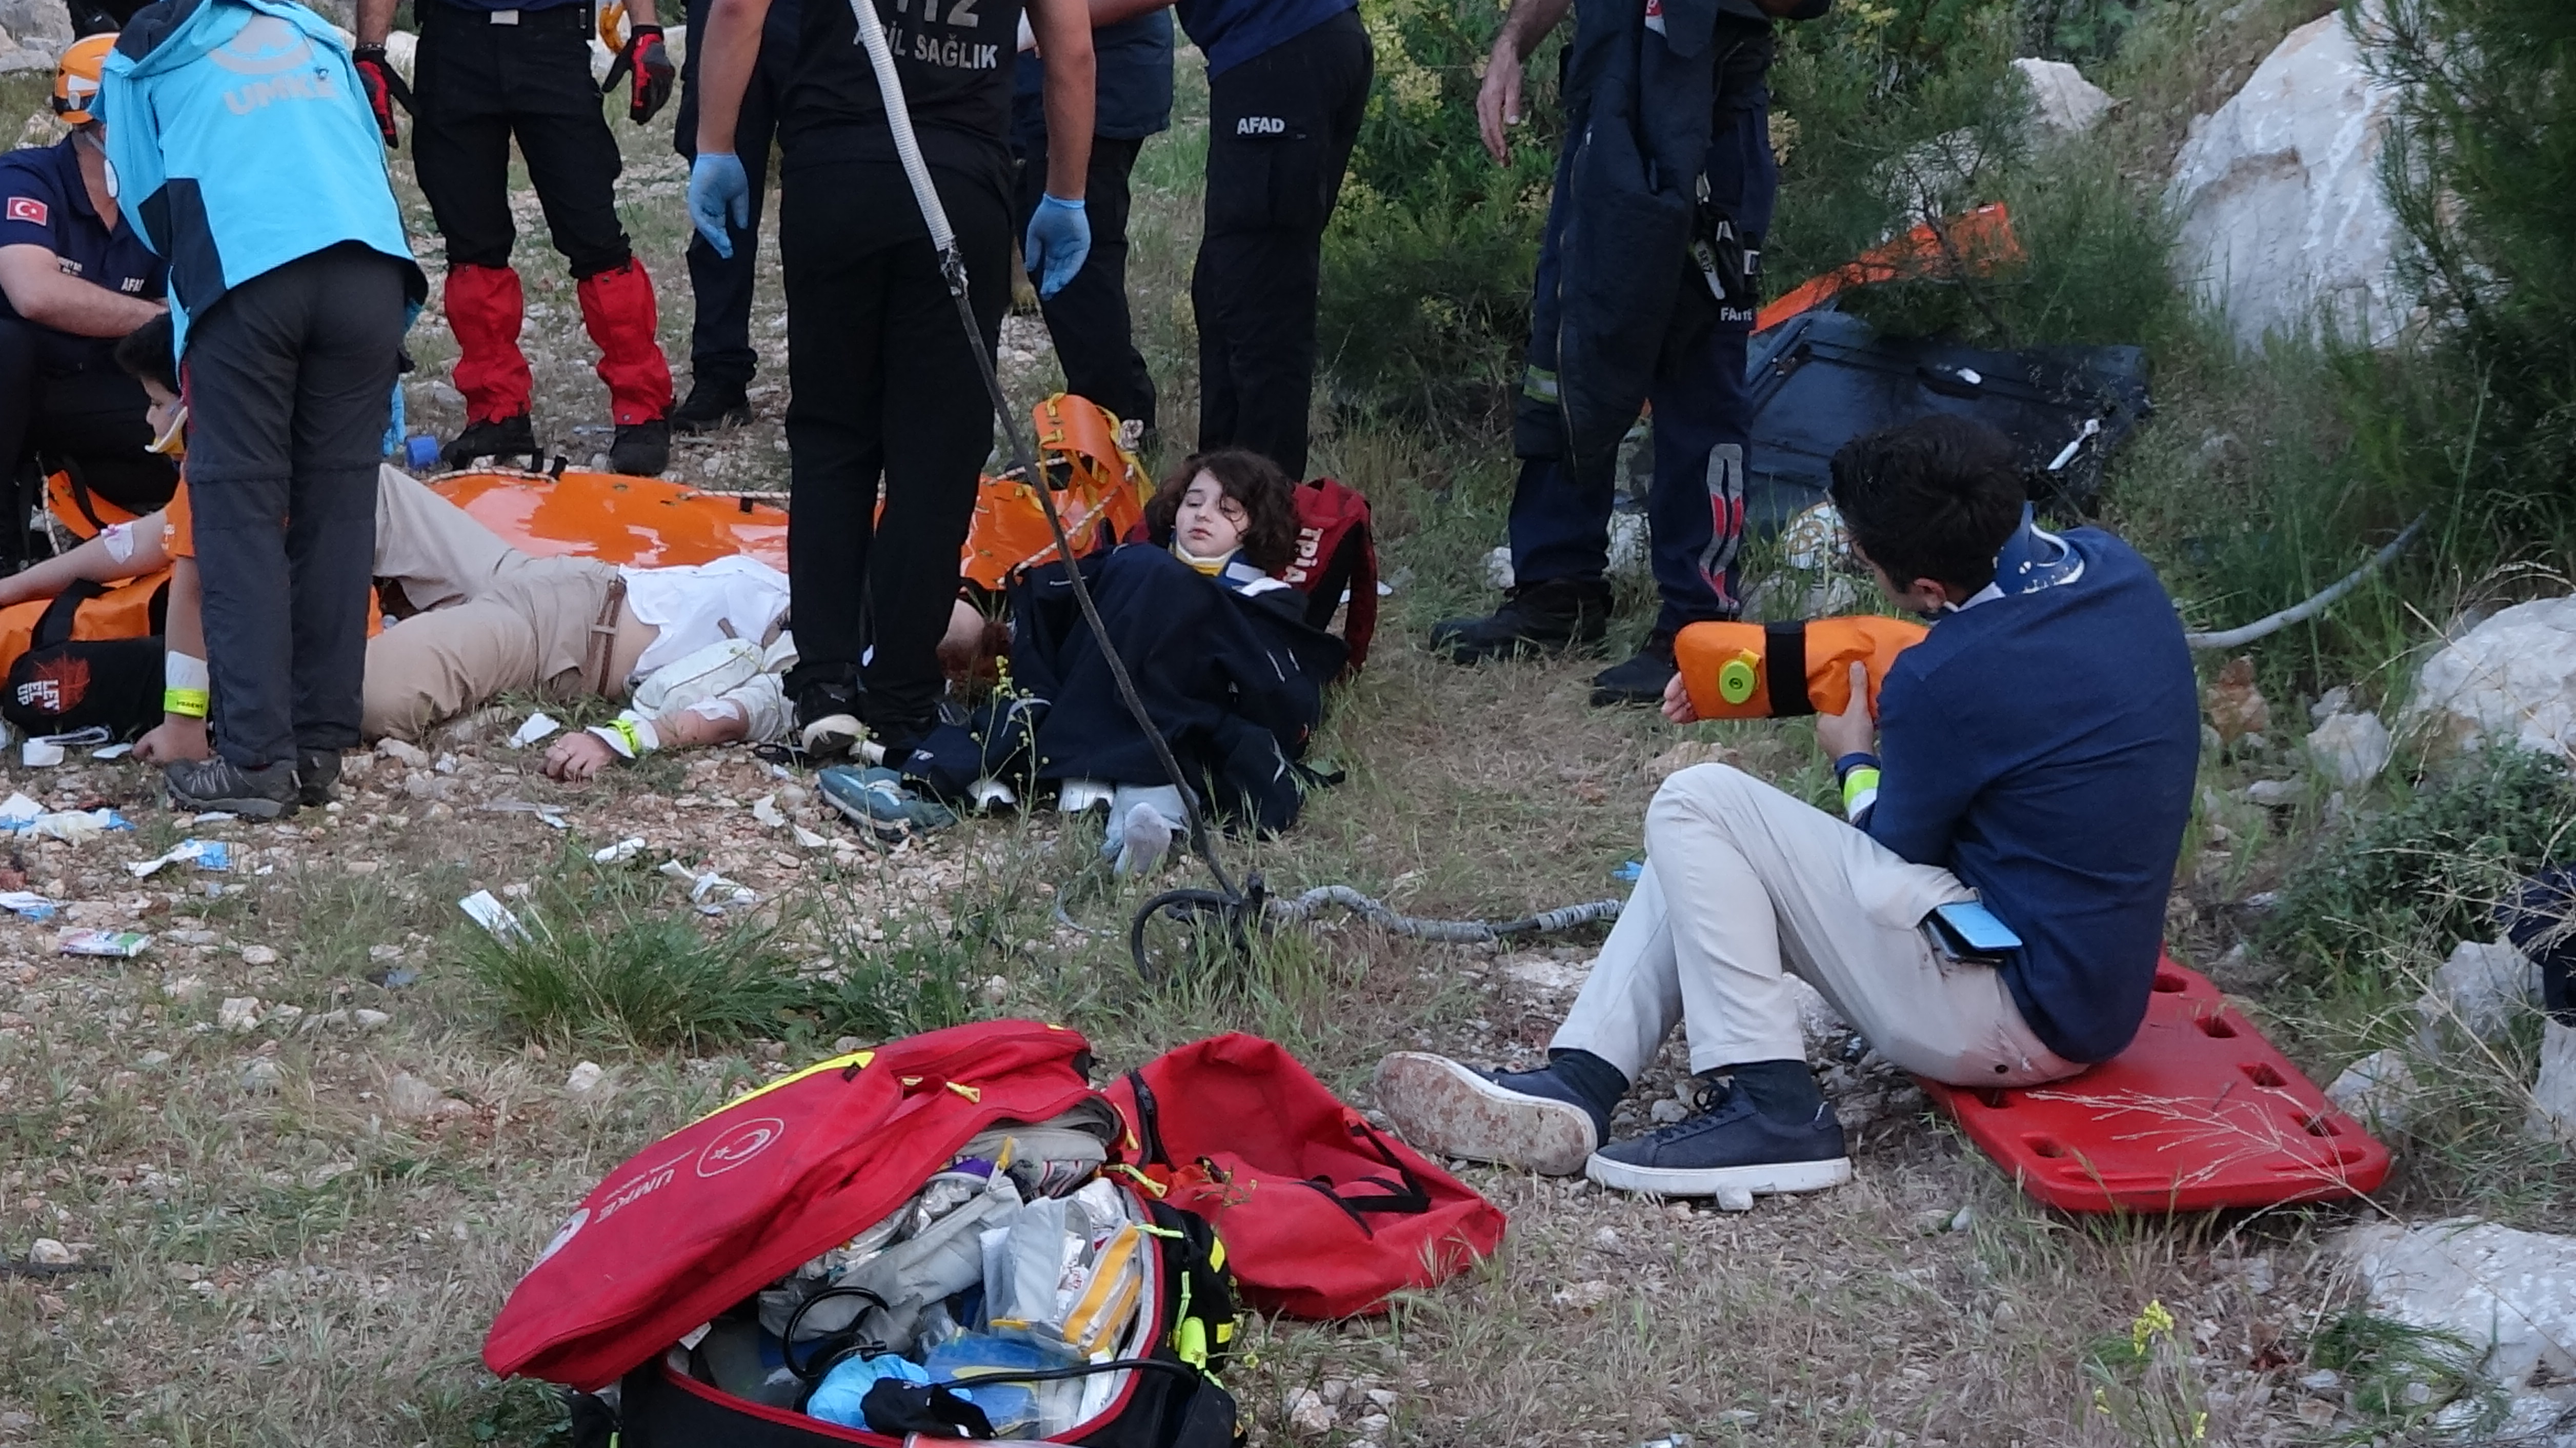 Çalışmalara destek vermek üzere Ankara, Erzurum, Bursa ve Afyon'dan da 8️0️ profesyonel dağcı ekibi, 4️ helikopter ve 1 askeri kargo uçağının bölgeye görevlendirildiği belirtilen paylaşımda, şu ifadelere yer verildi: "18 vatandaşımız tahliye edilmiş olup kurtarma çalışmaları profesyonel ekiplerimiz tarafından sürdürülmektedir. Hayatını kaybeden vatandaşımıza Allah'tan rahmet, ailesine ve yakınlarına baş sağlığı, yaralılara acil şifalar dileriz. Gelişmeleri takip ediyoruz."